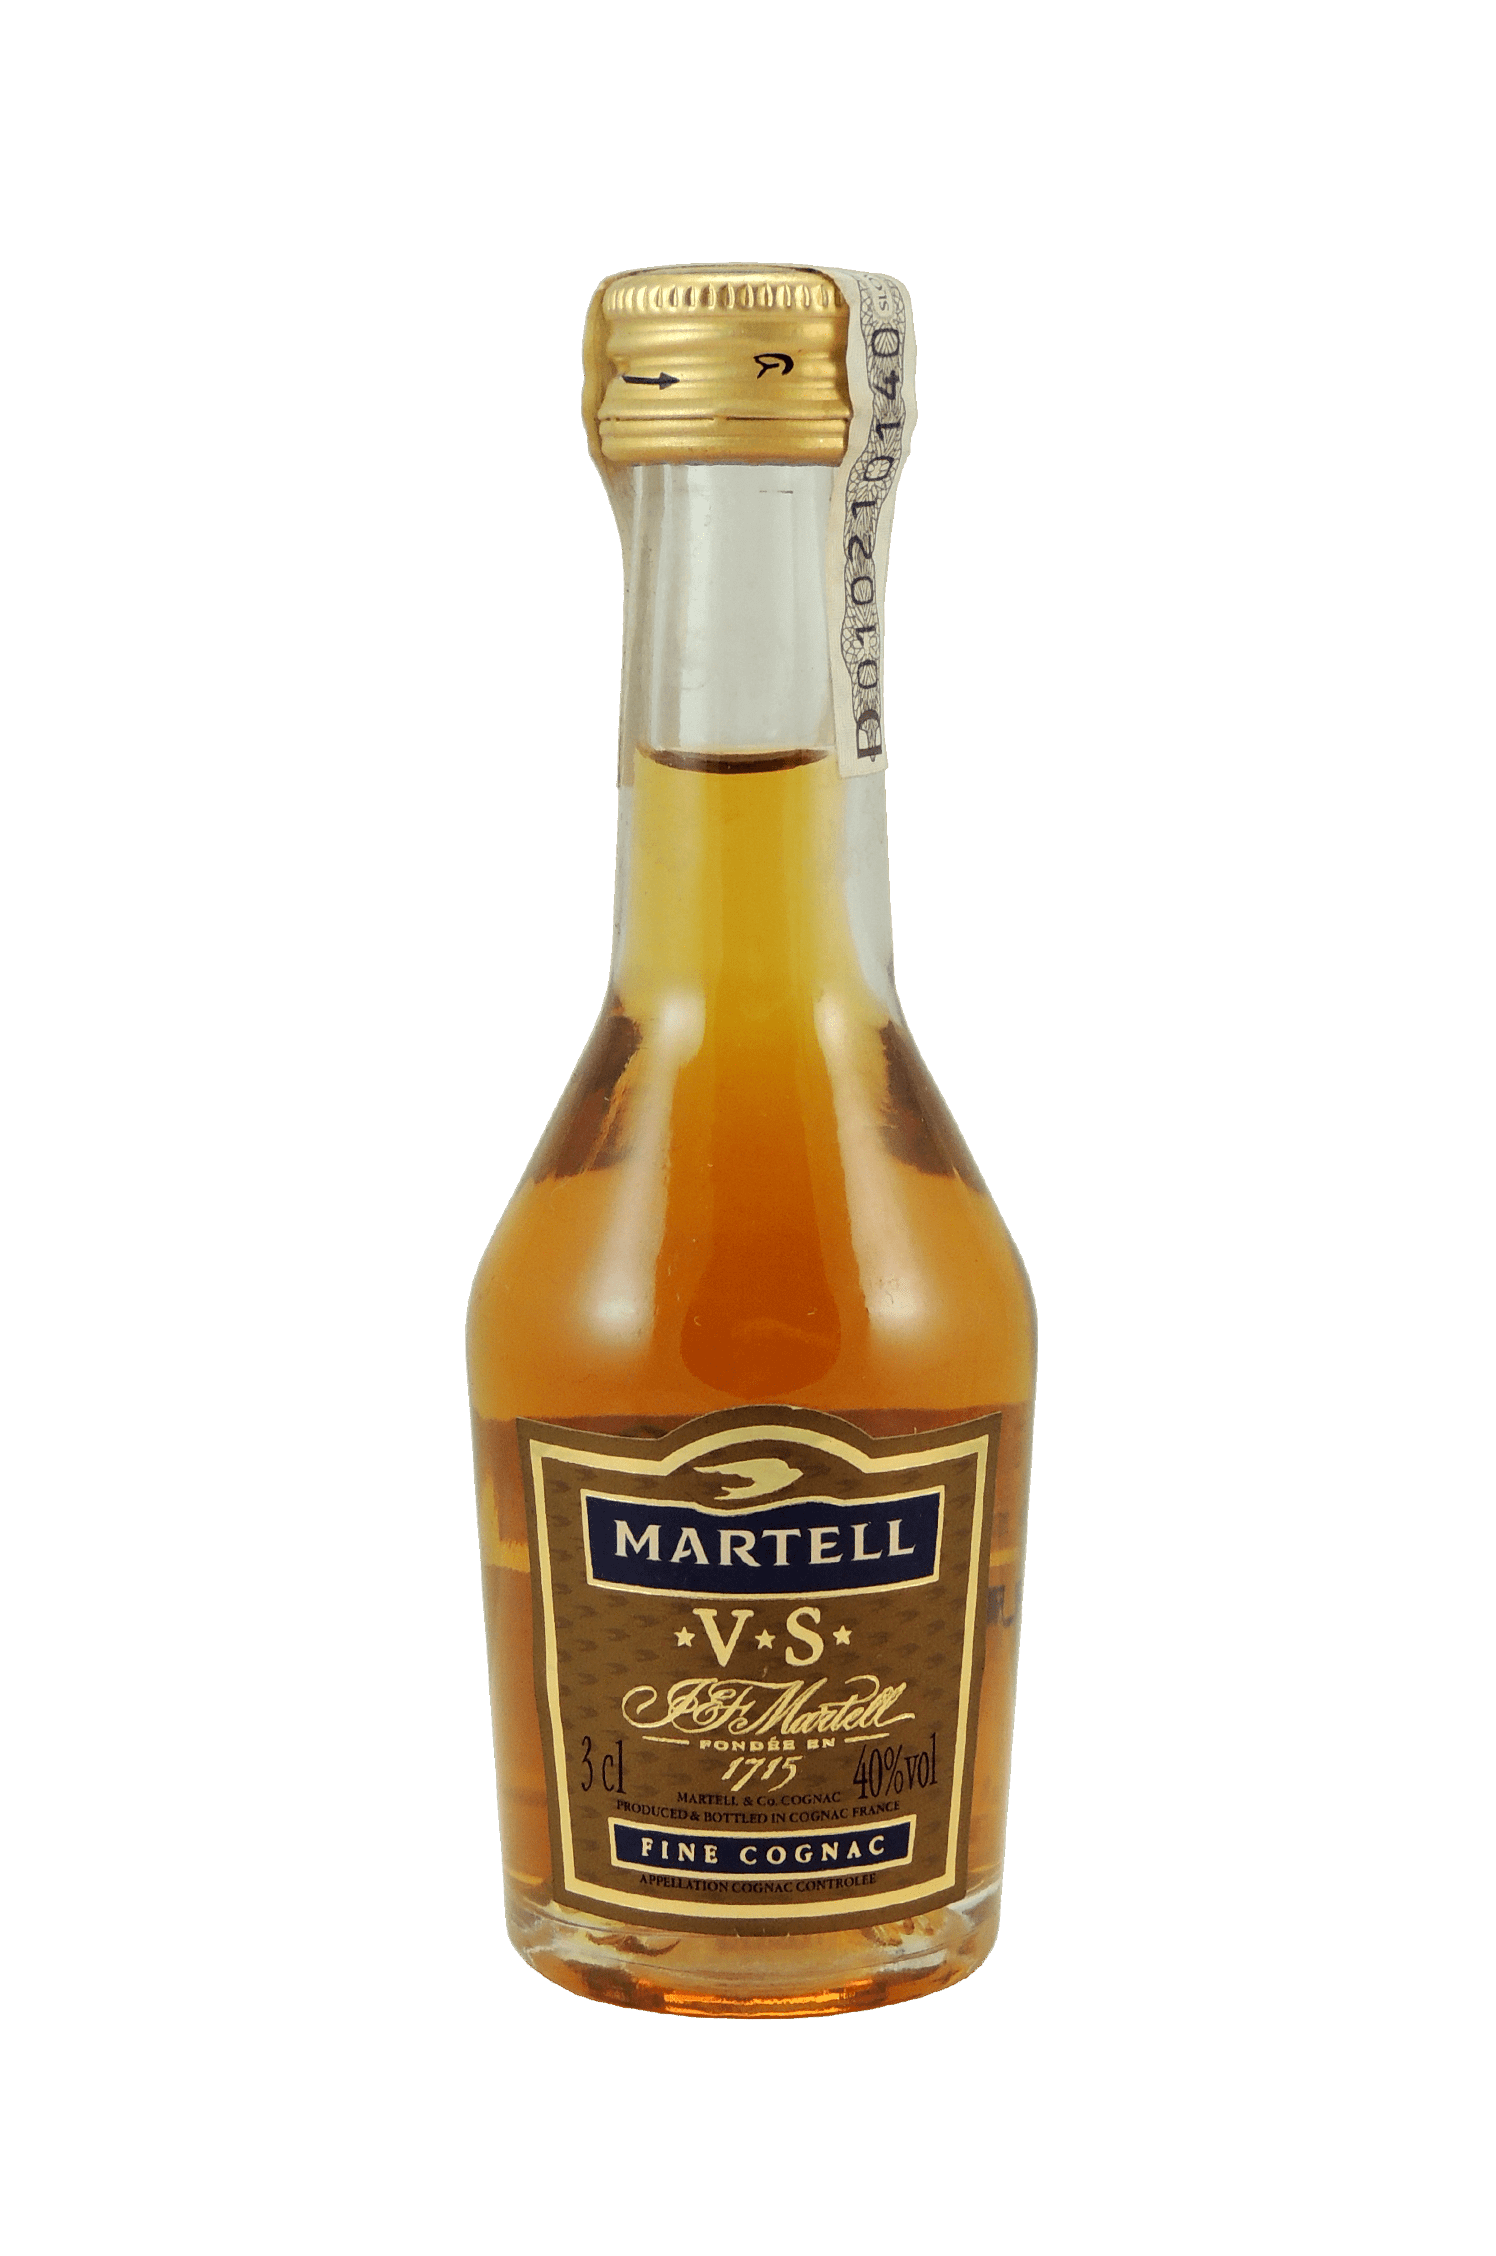 Martell V.S. Cognac